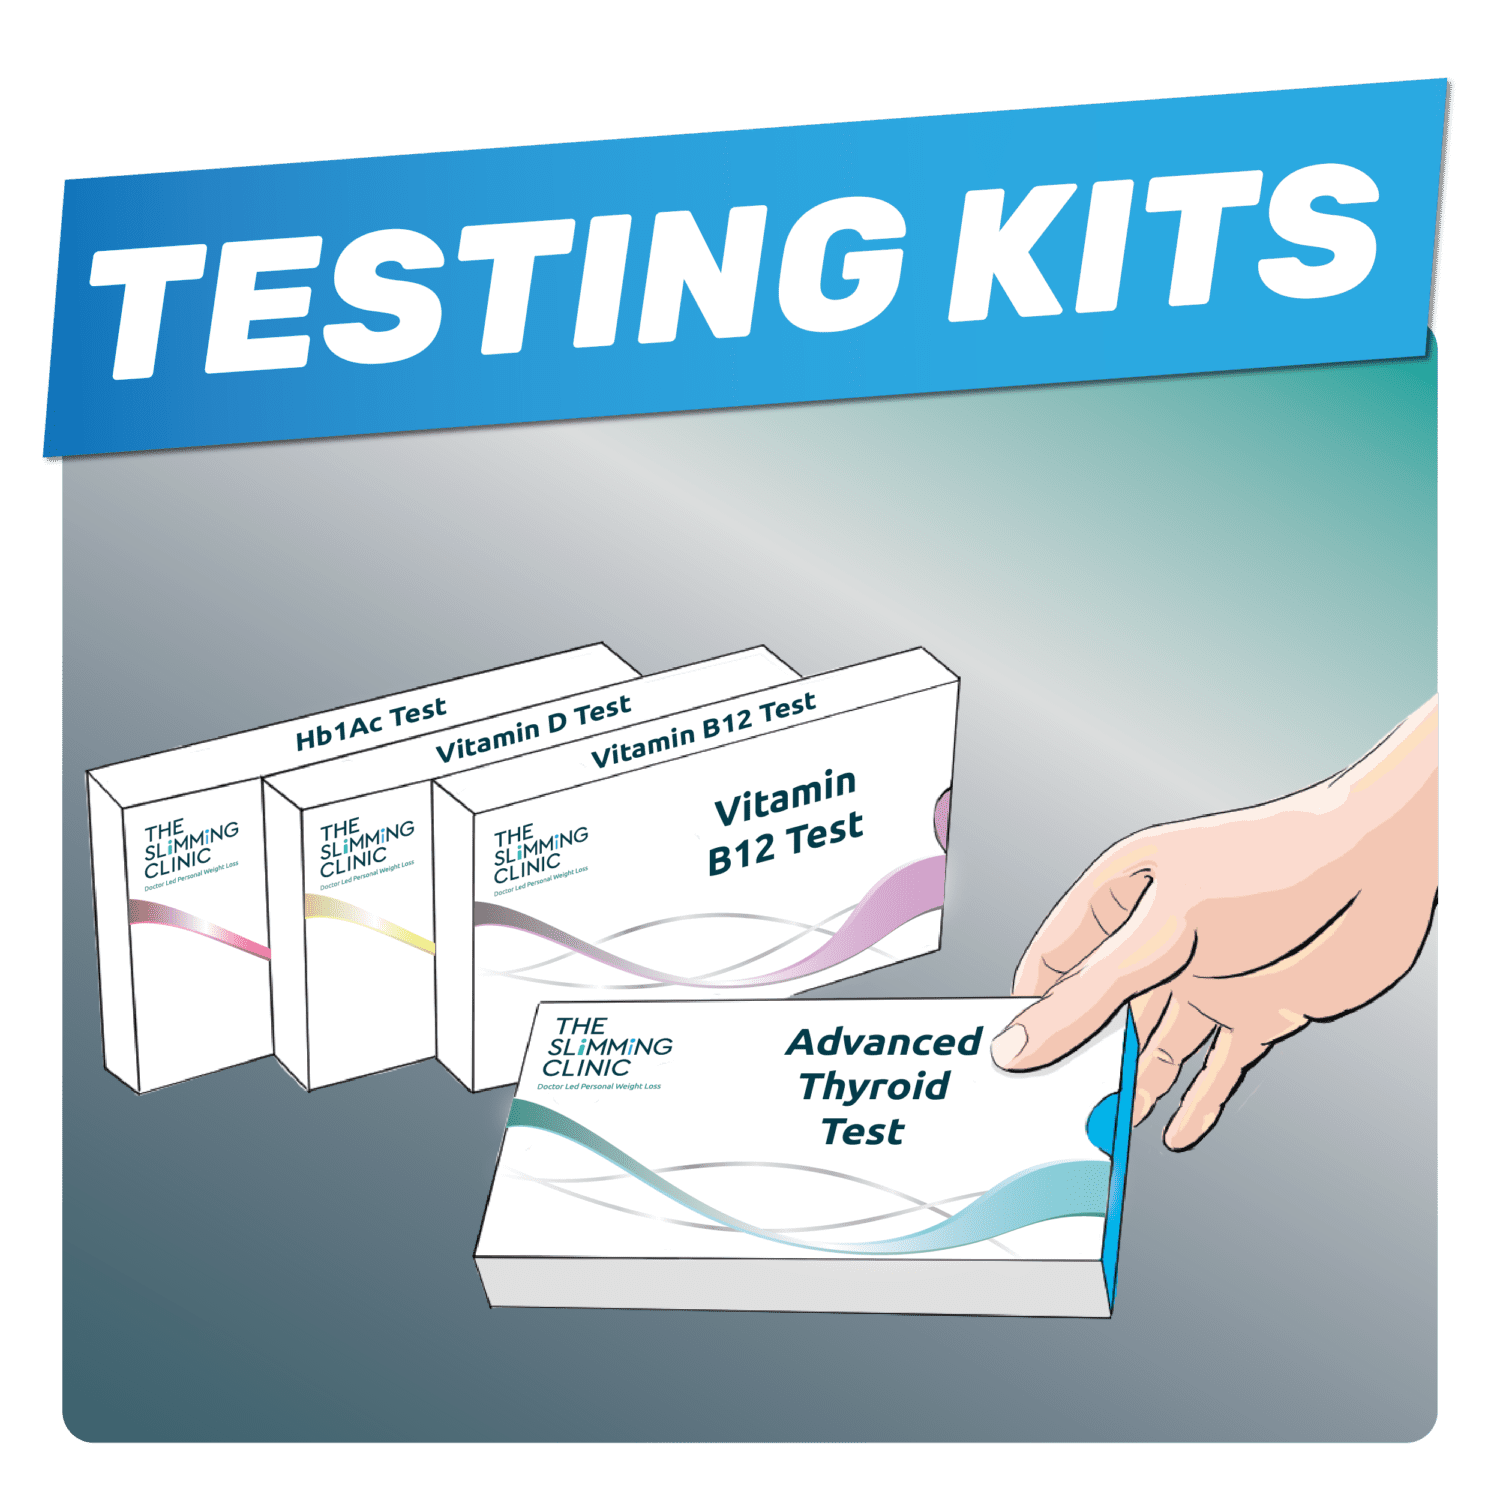 Blood Test Kits